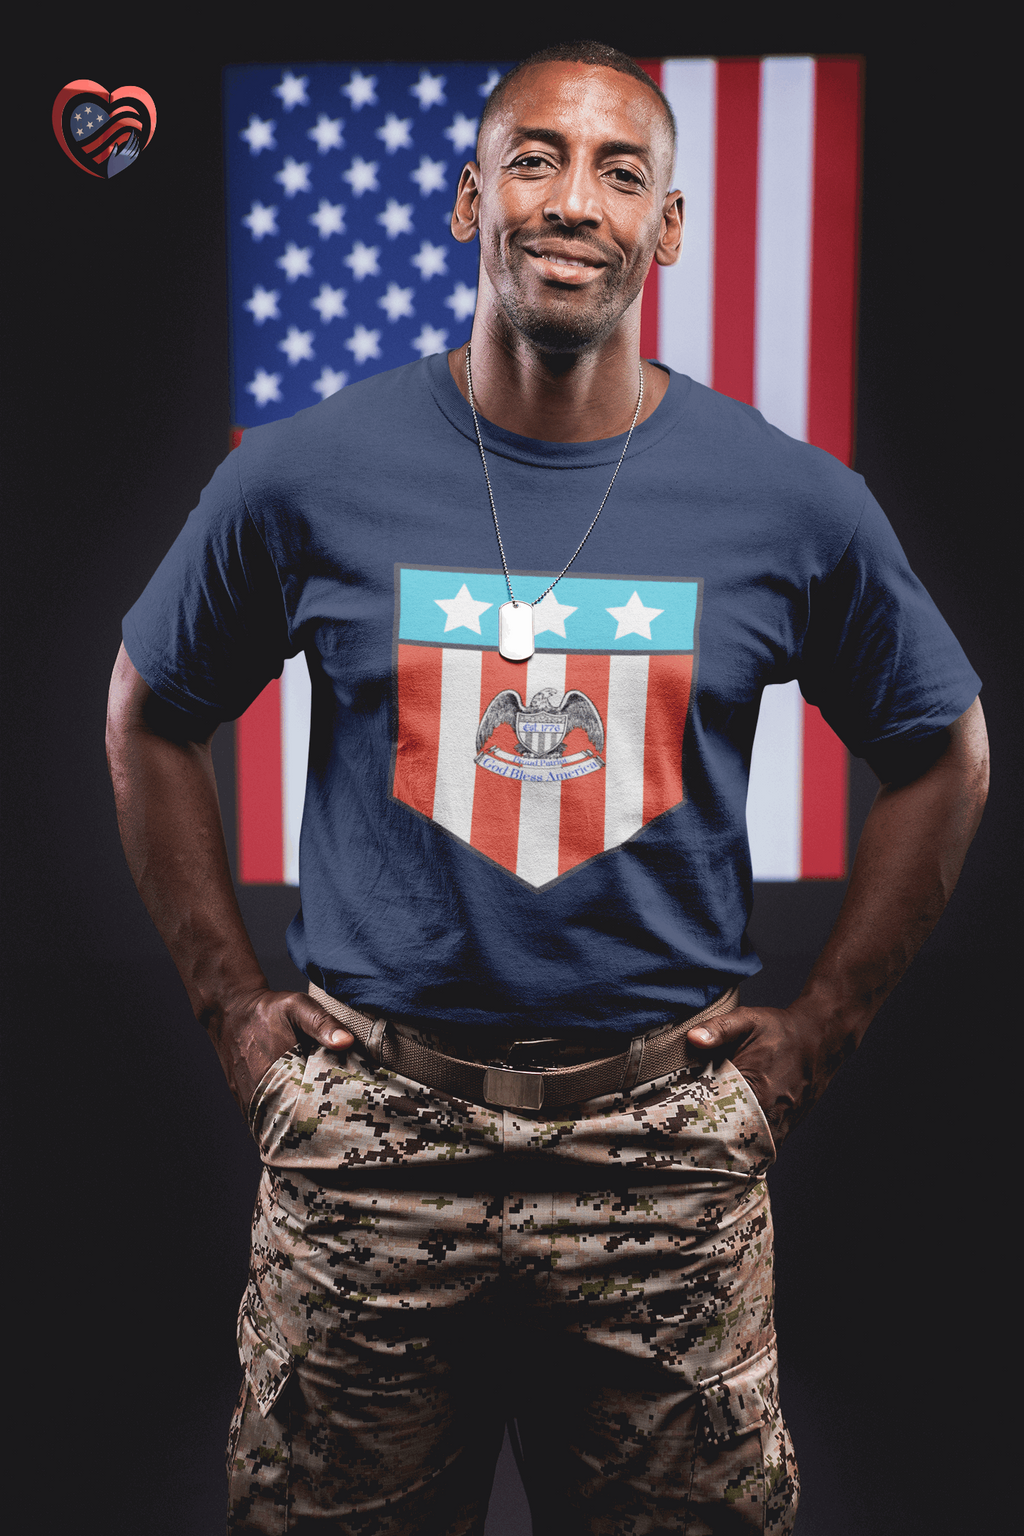 Proud Patriot - 1776 - Unisex Softstyle T-Shirt - Pledge Project